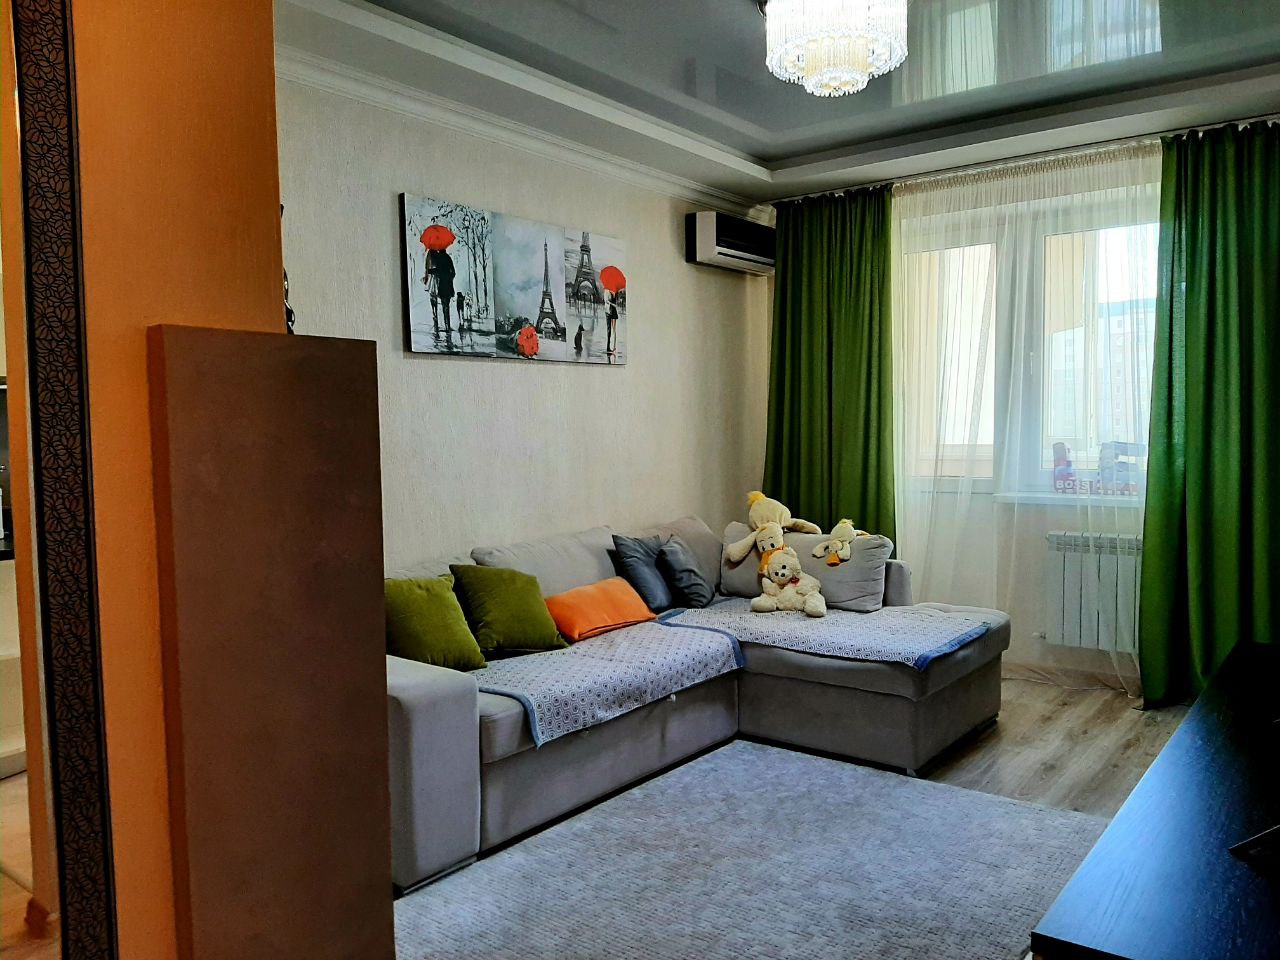 VÂNDUT, Apartament de vânzare, Chișinău, sec.Ciocana, 2 odăi, Complex locativ Mircea cel Bătrân, 70 m2, et.4